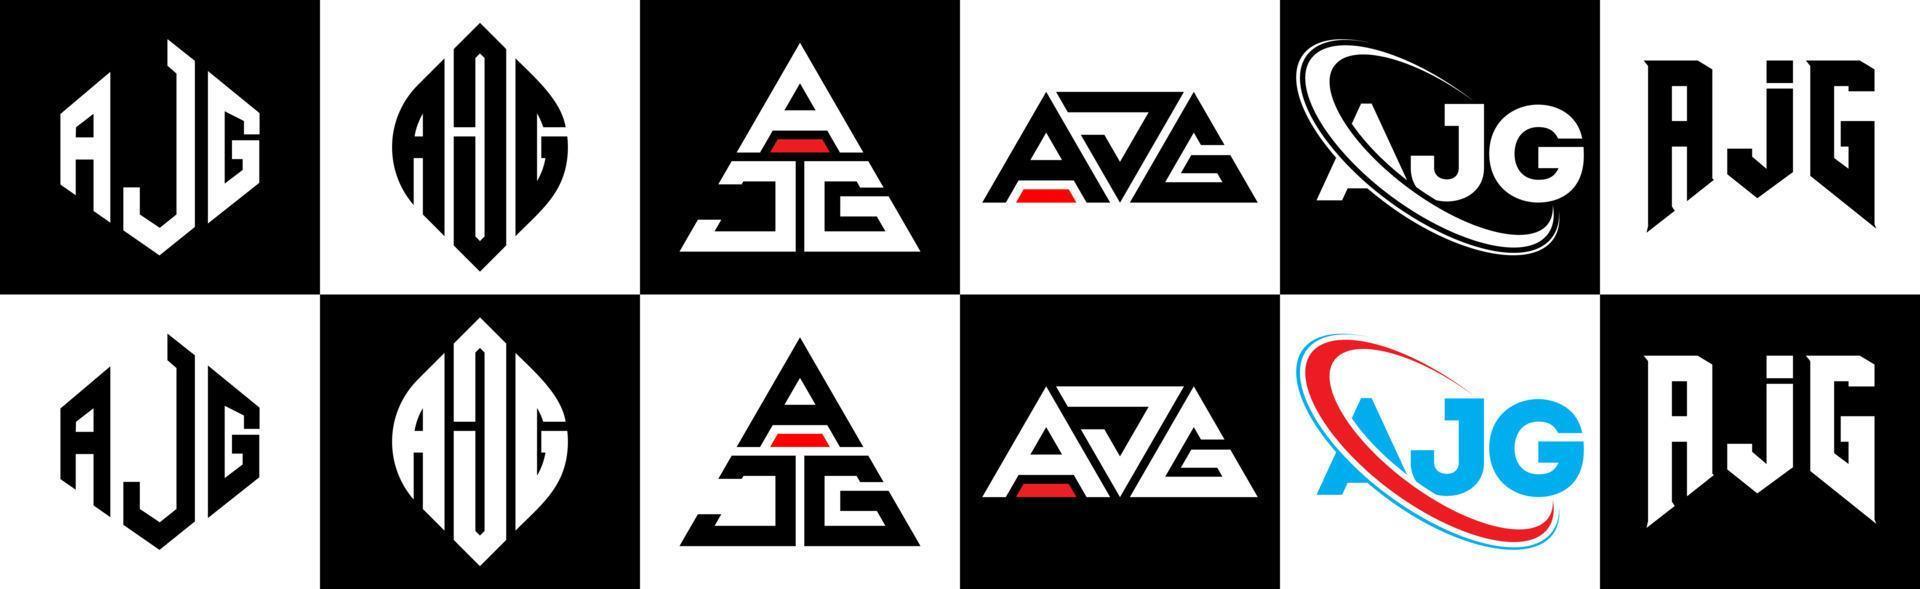 ajg-Buchstaben-Logo-Design in sechs Stilen. ajg Polygon, Kreis, Dreieck, Sechseck, flacher und einfacher Stil mit schwarz-weißem Buchstabenlogo in einer Zeichenfläche. ajg minimalistisches und klassisches Logo vektor